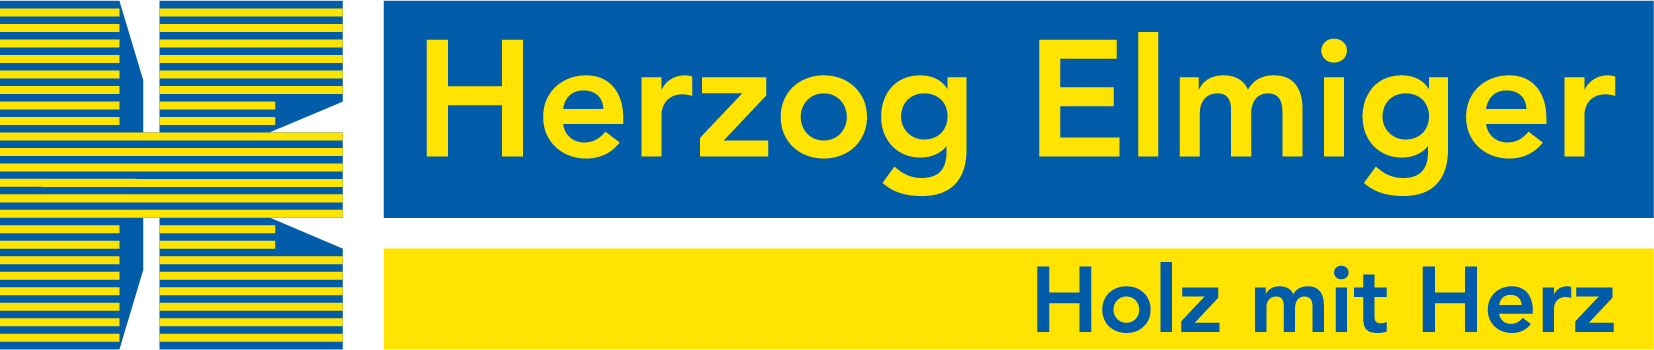 Herzog_Elmiger_Logo